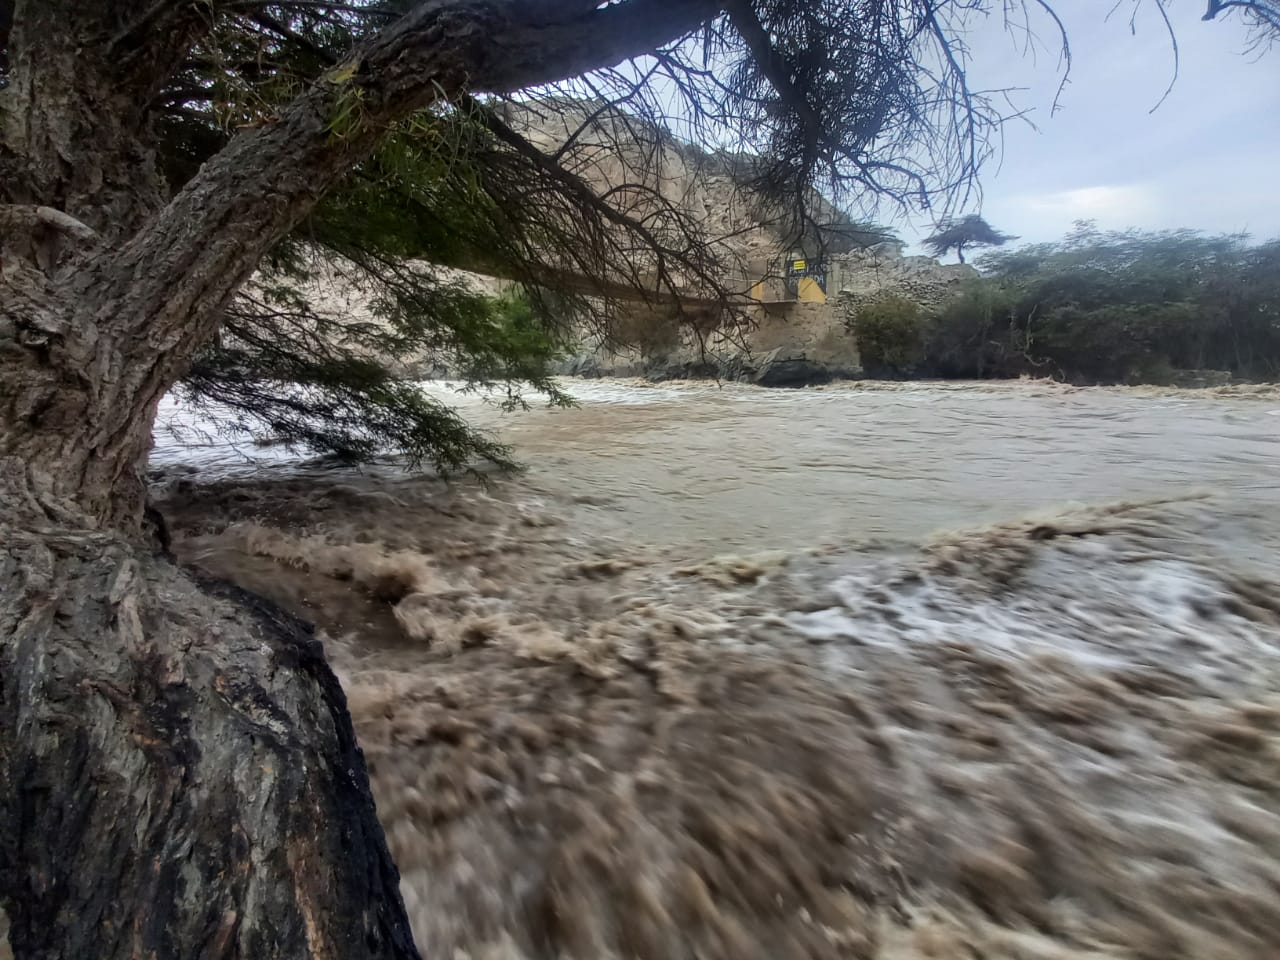 Incremento del caudal del río Pisco alerta a los pobladores de Ica ante posibles desbordes. (Twitter)